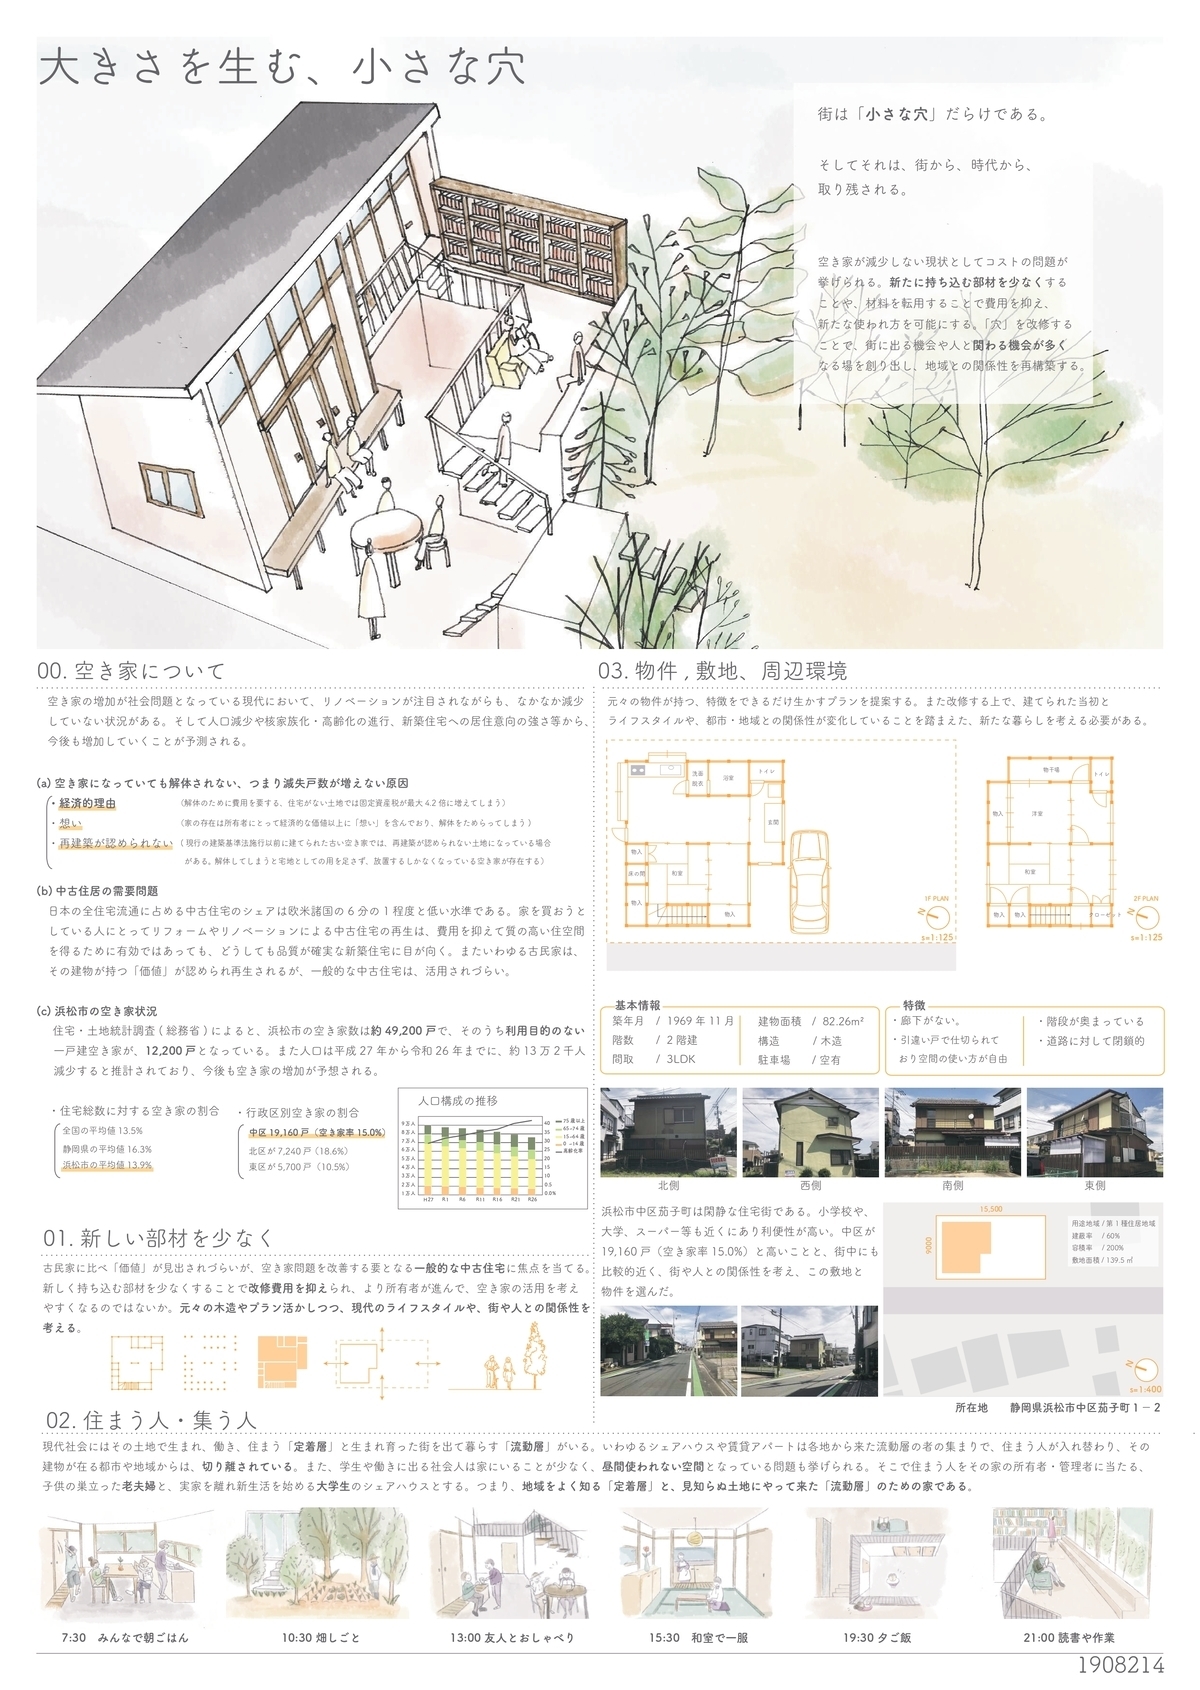 受賞作品一覧2019/ビルダー賞〜 - 木の家設計グランプリ